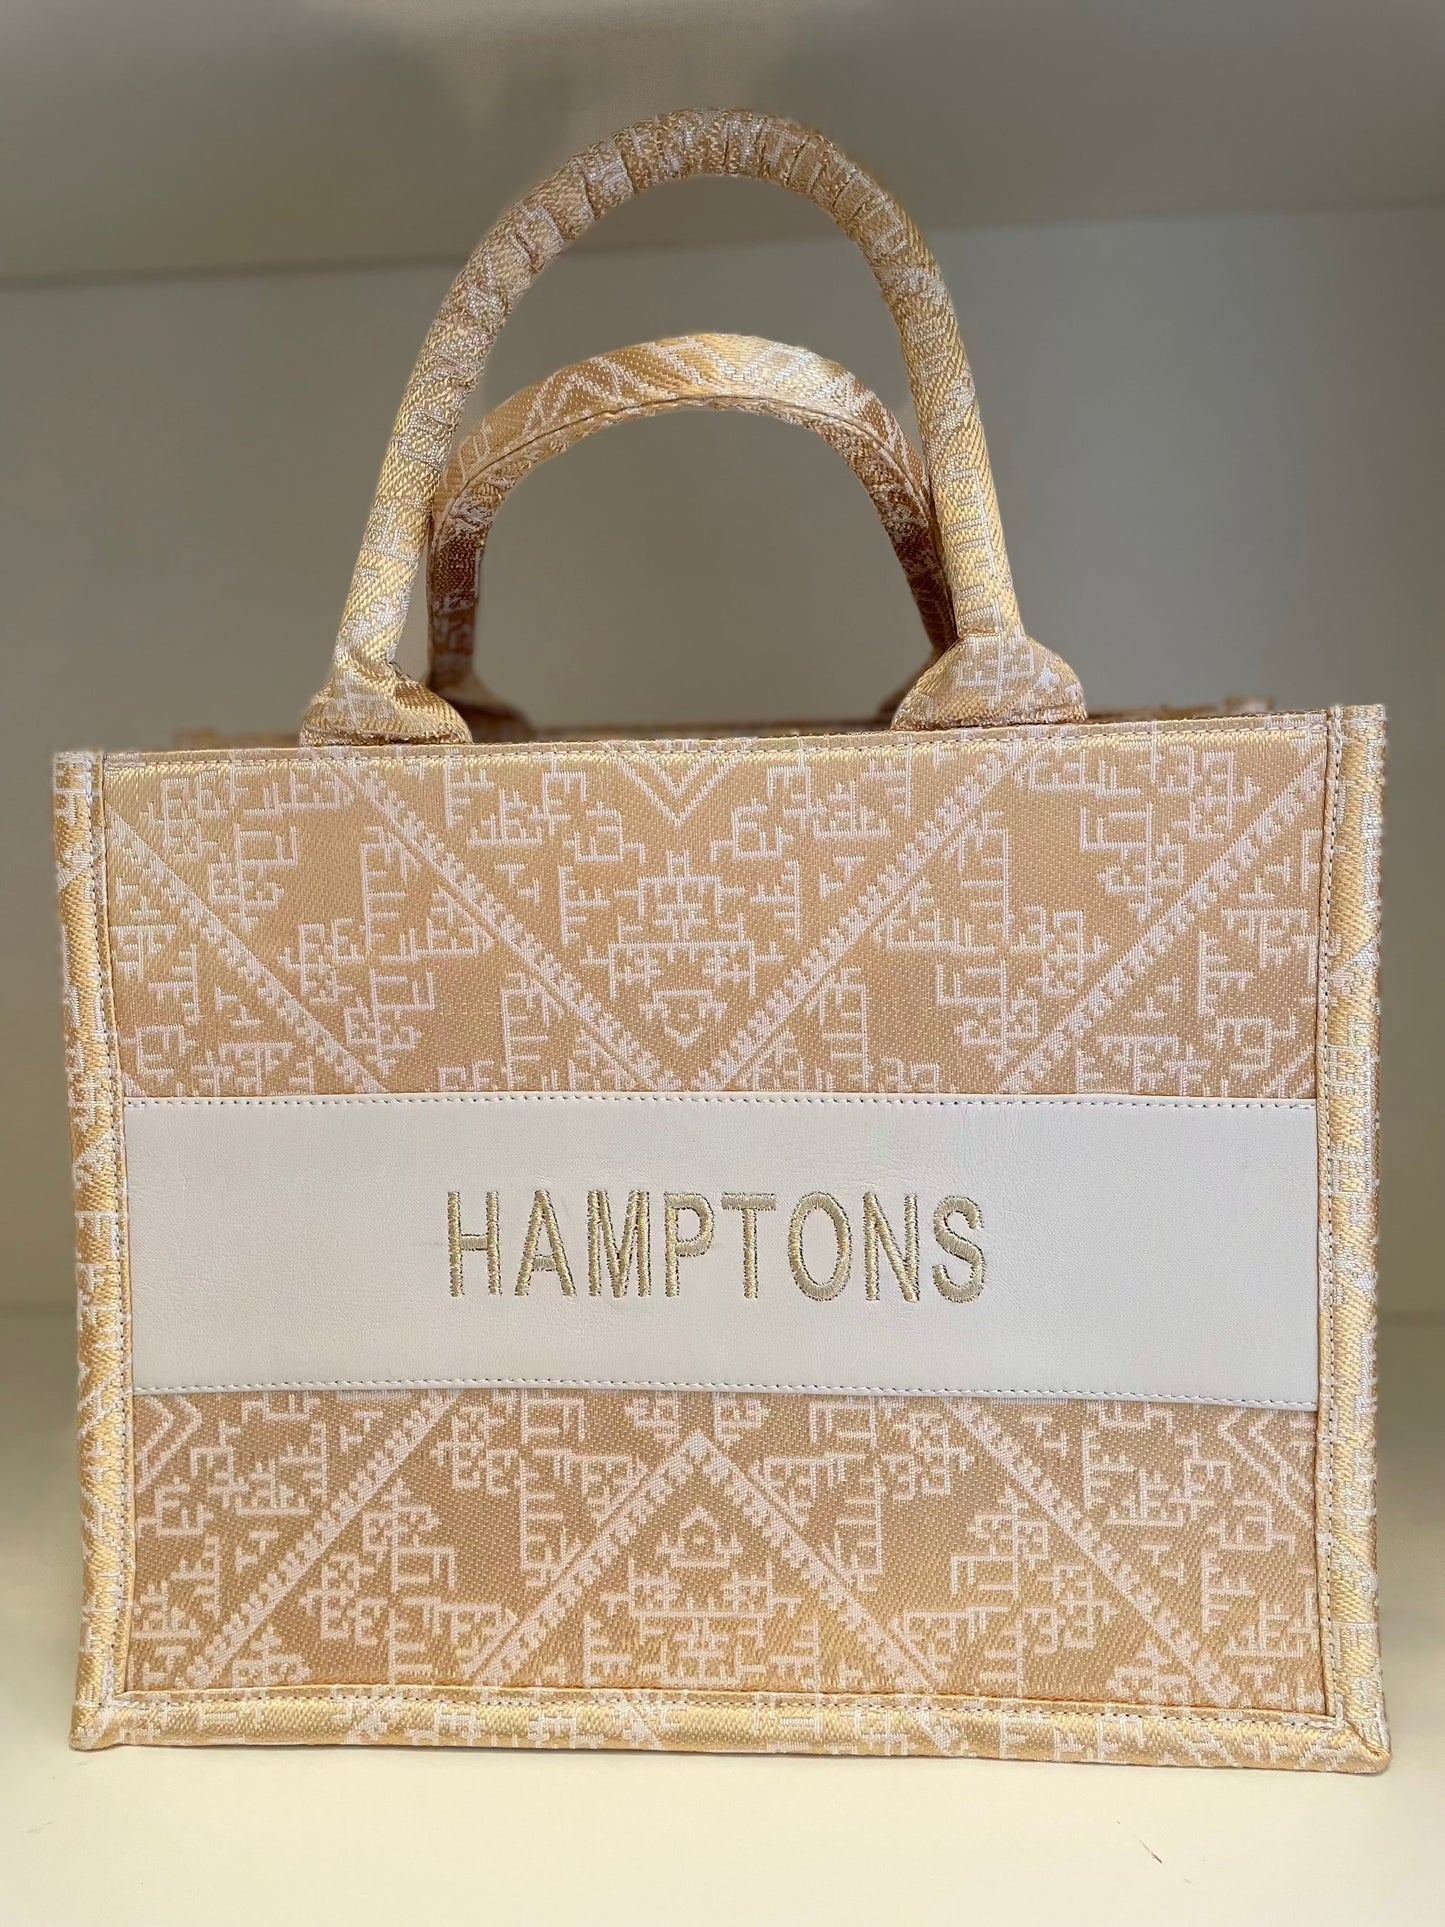 Small Tote CD Hamptons - Premium Bag from Marina St. Barth - Just $175! Shop now at Marina St Barth